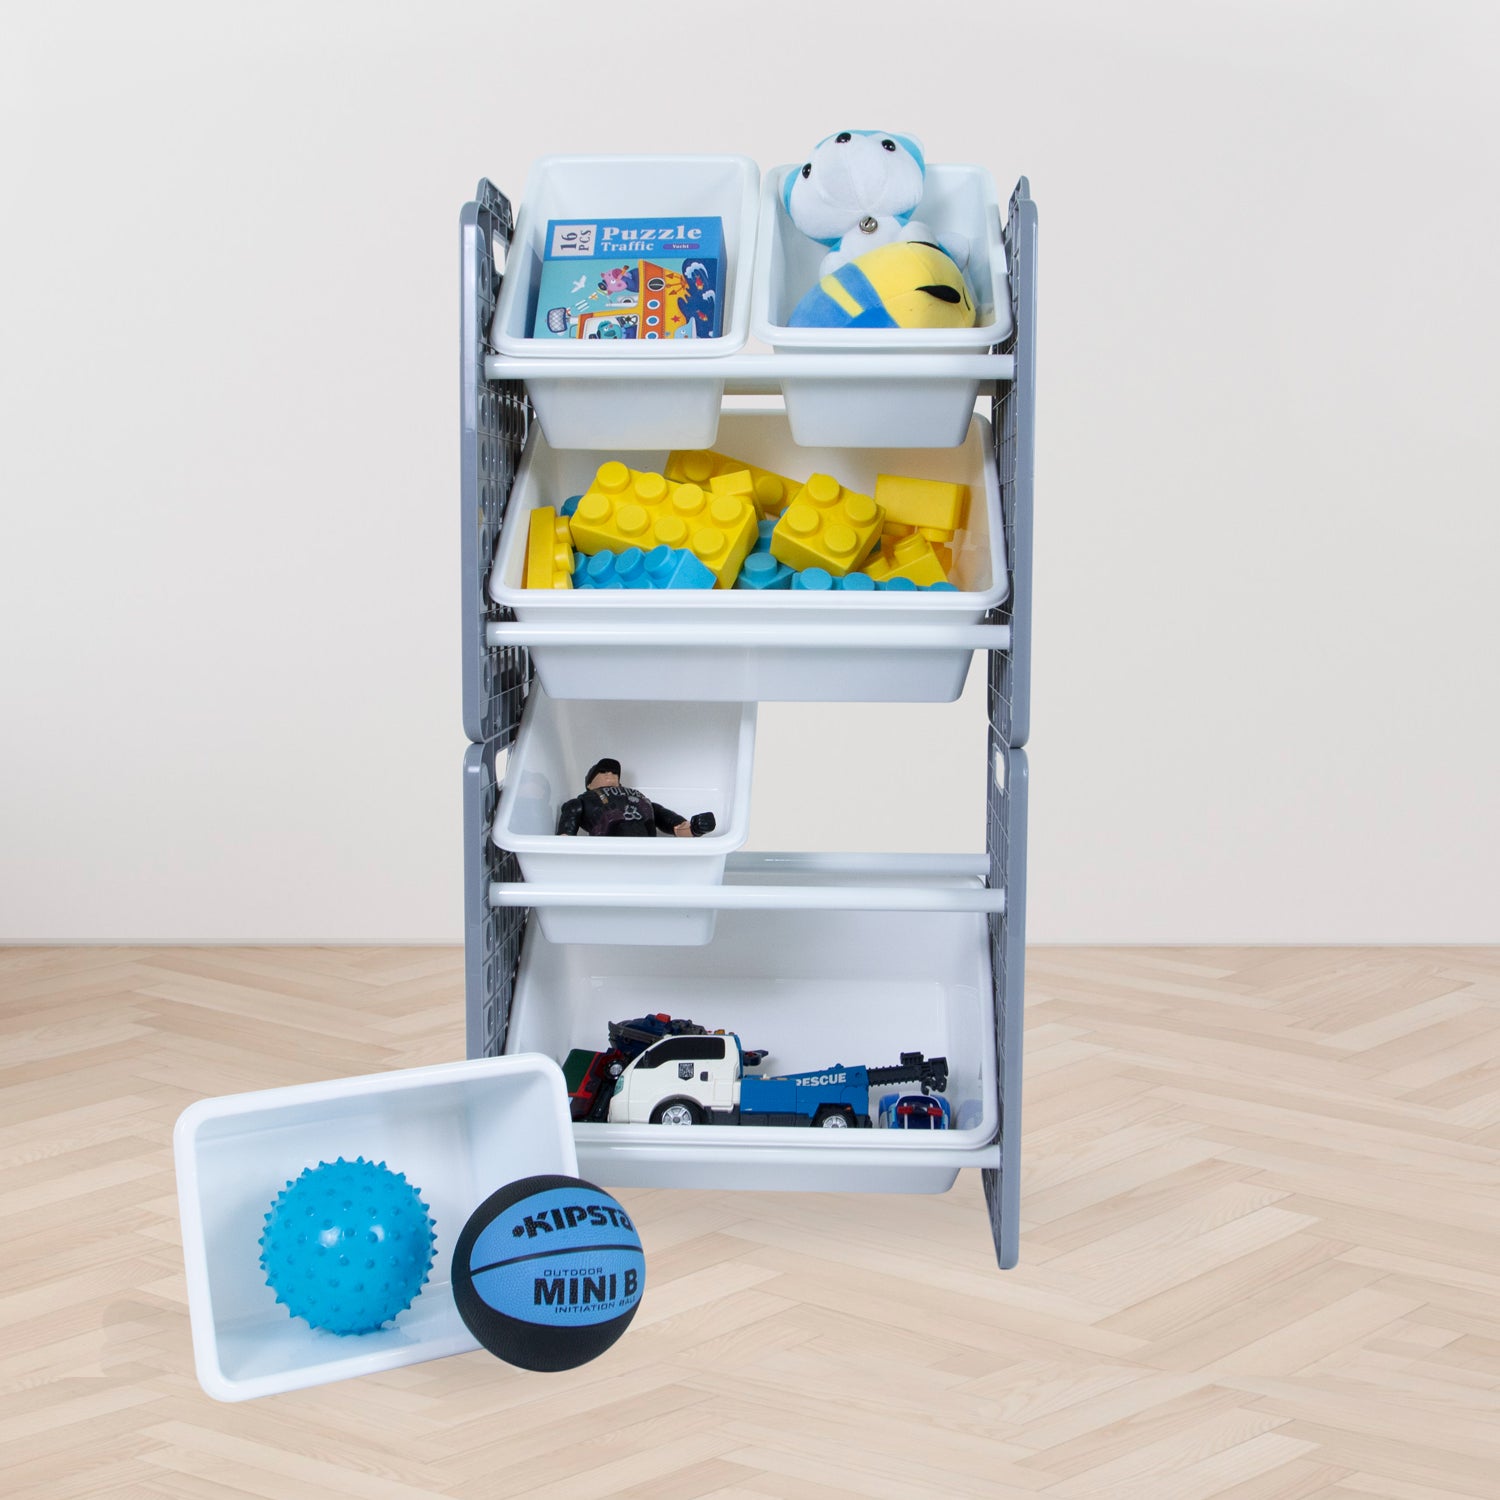 UNiPLAY 6 Bins Toy Storage Organizer - Gray (UB45512)